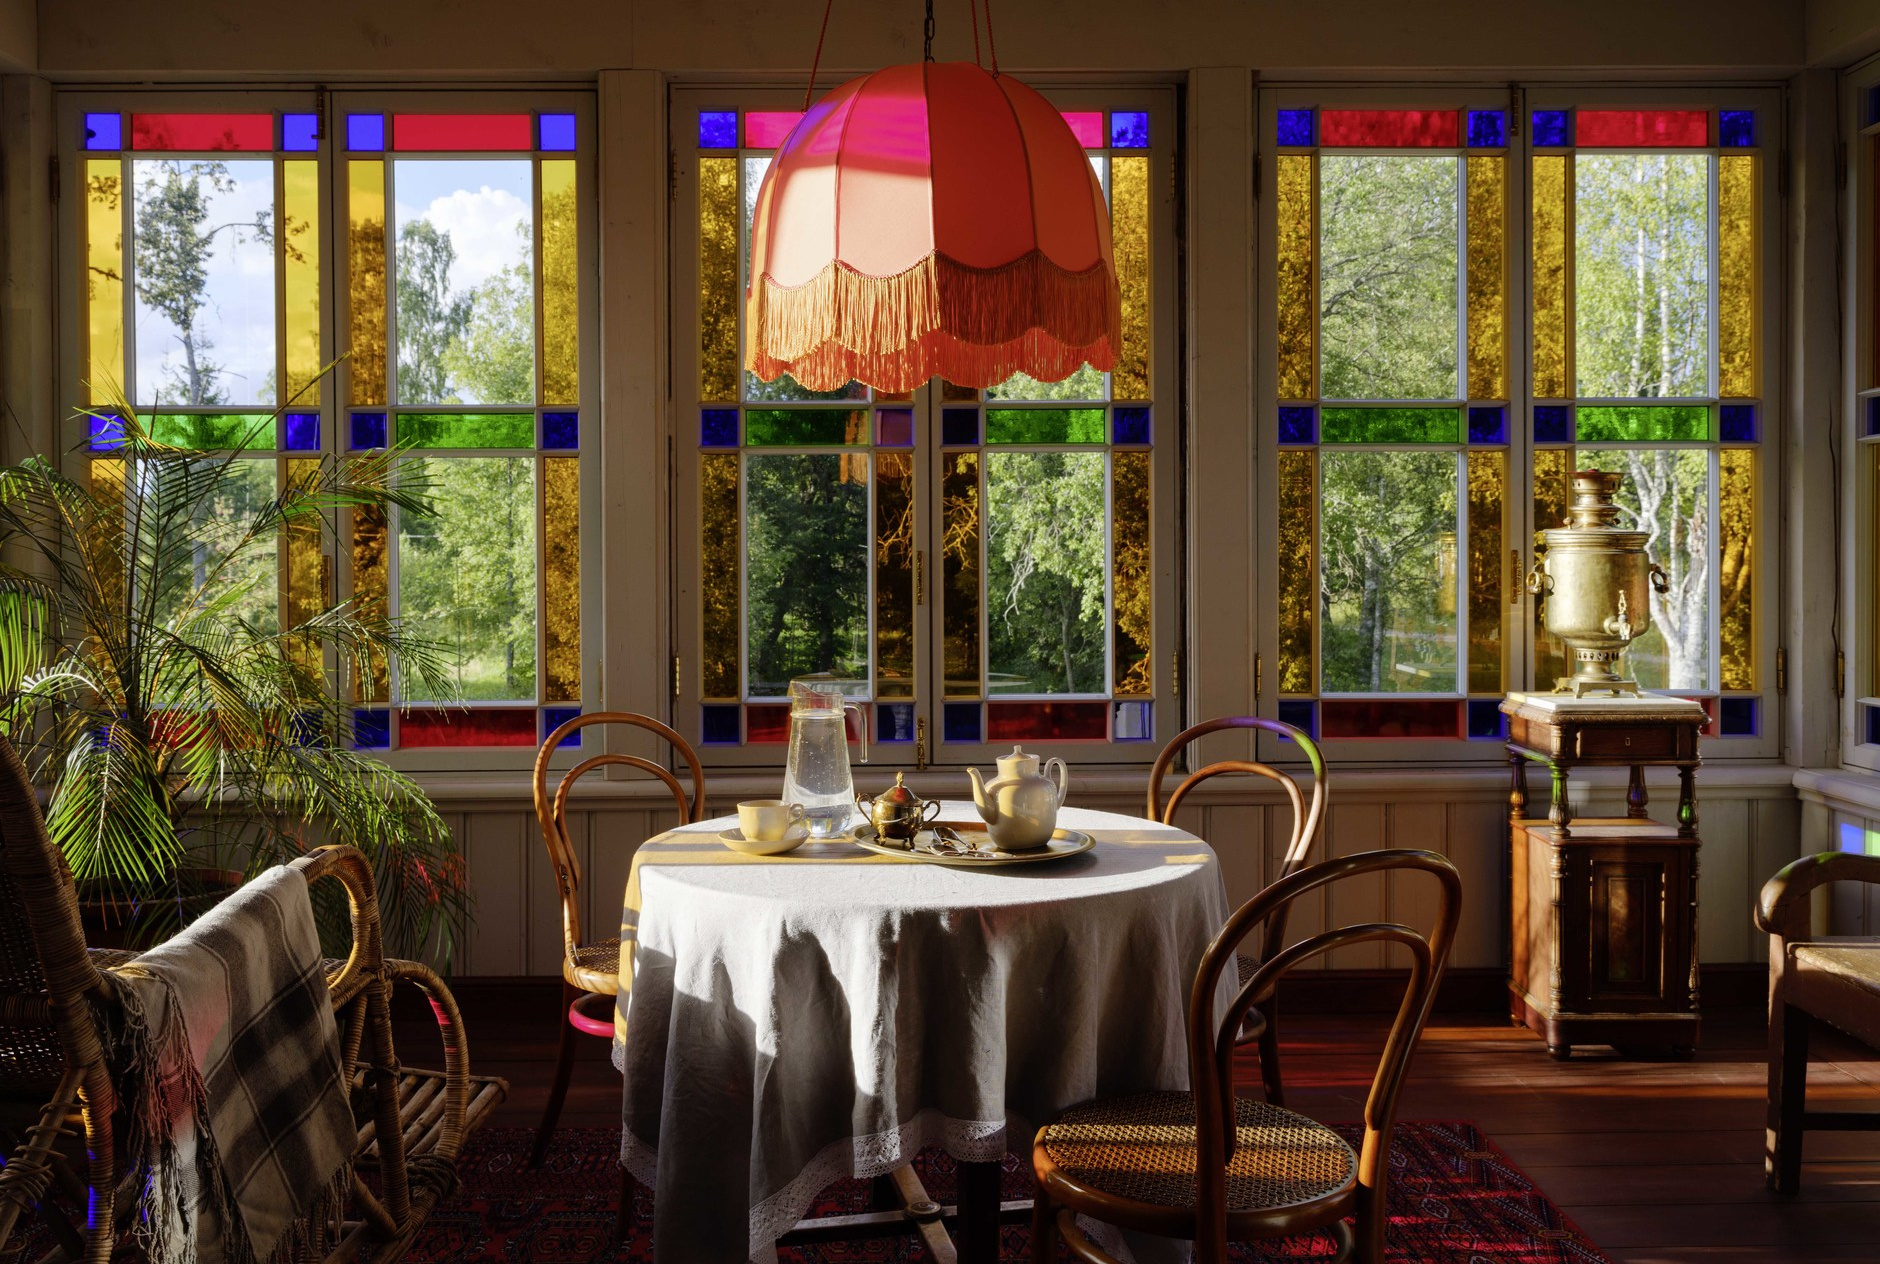 Khu vực phòng ăn lãng mạn với những ô cửa sổ lớn được biến tấu bằng kính màu viền xung quanh. Chủ nhân vẫn có thể ngắm nhìn được khung cảnh khu vườn xanh tươi bên ngoài vừa có thêm điểm nhấn màu sắc.